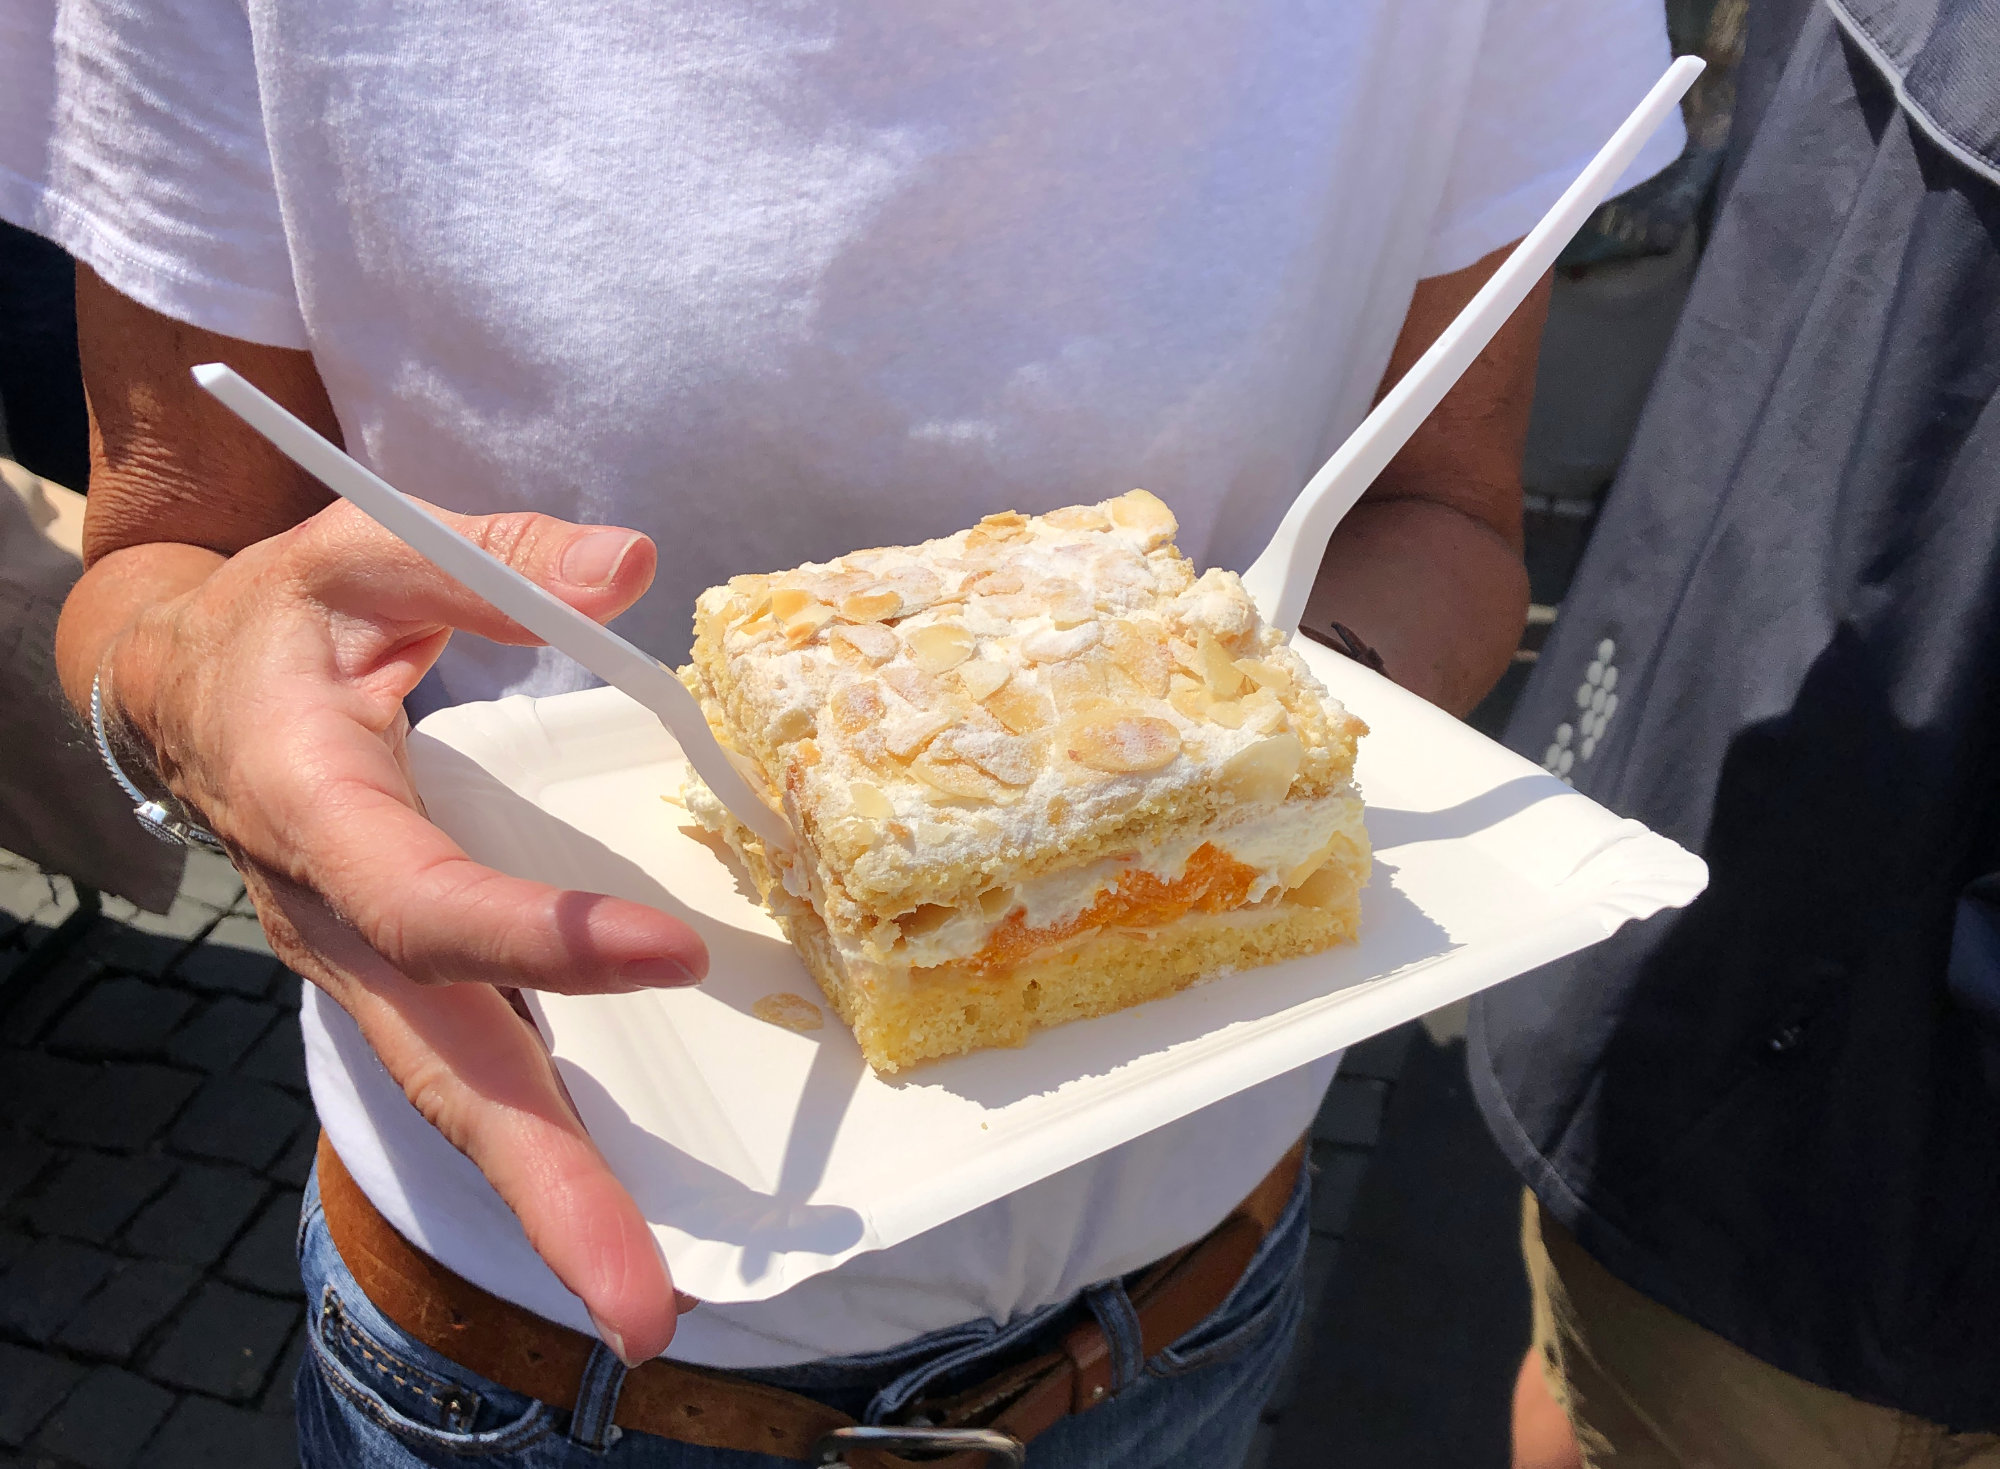 ドイツの驚くべき 食文化 何故ドイツではケーキにフォークを横刺しにするのか問題 に迫る 第二弾 ドイツ大使館 Young Germany Japan